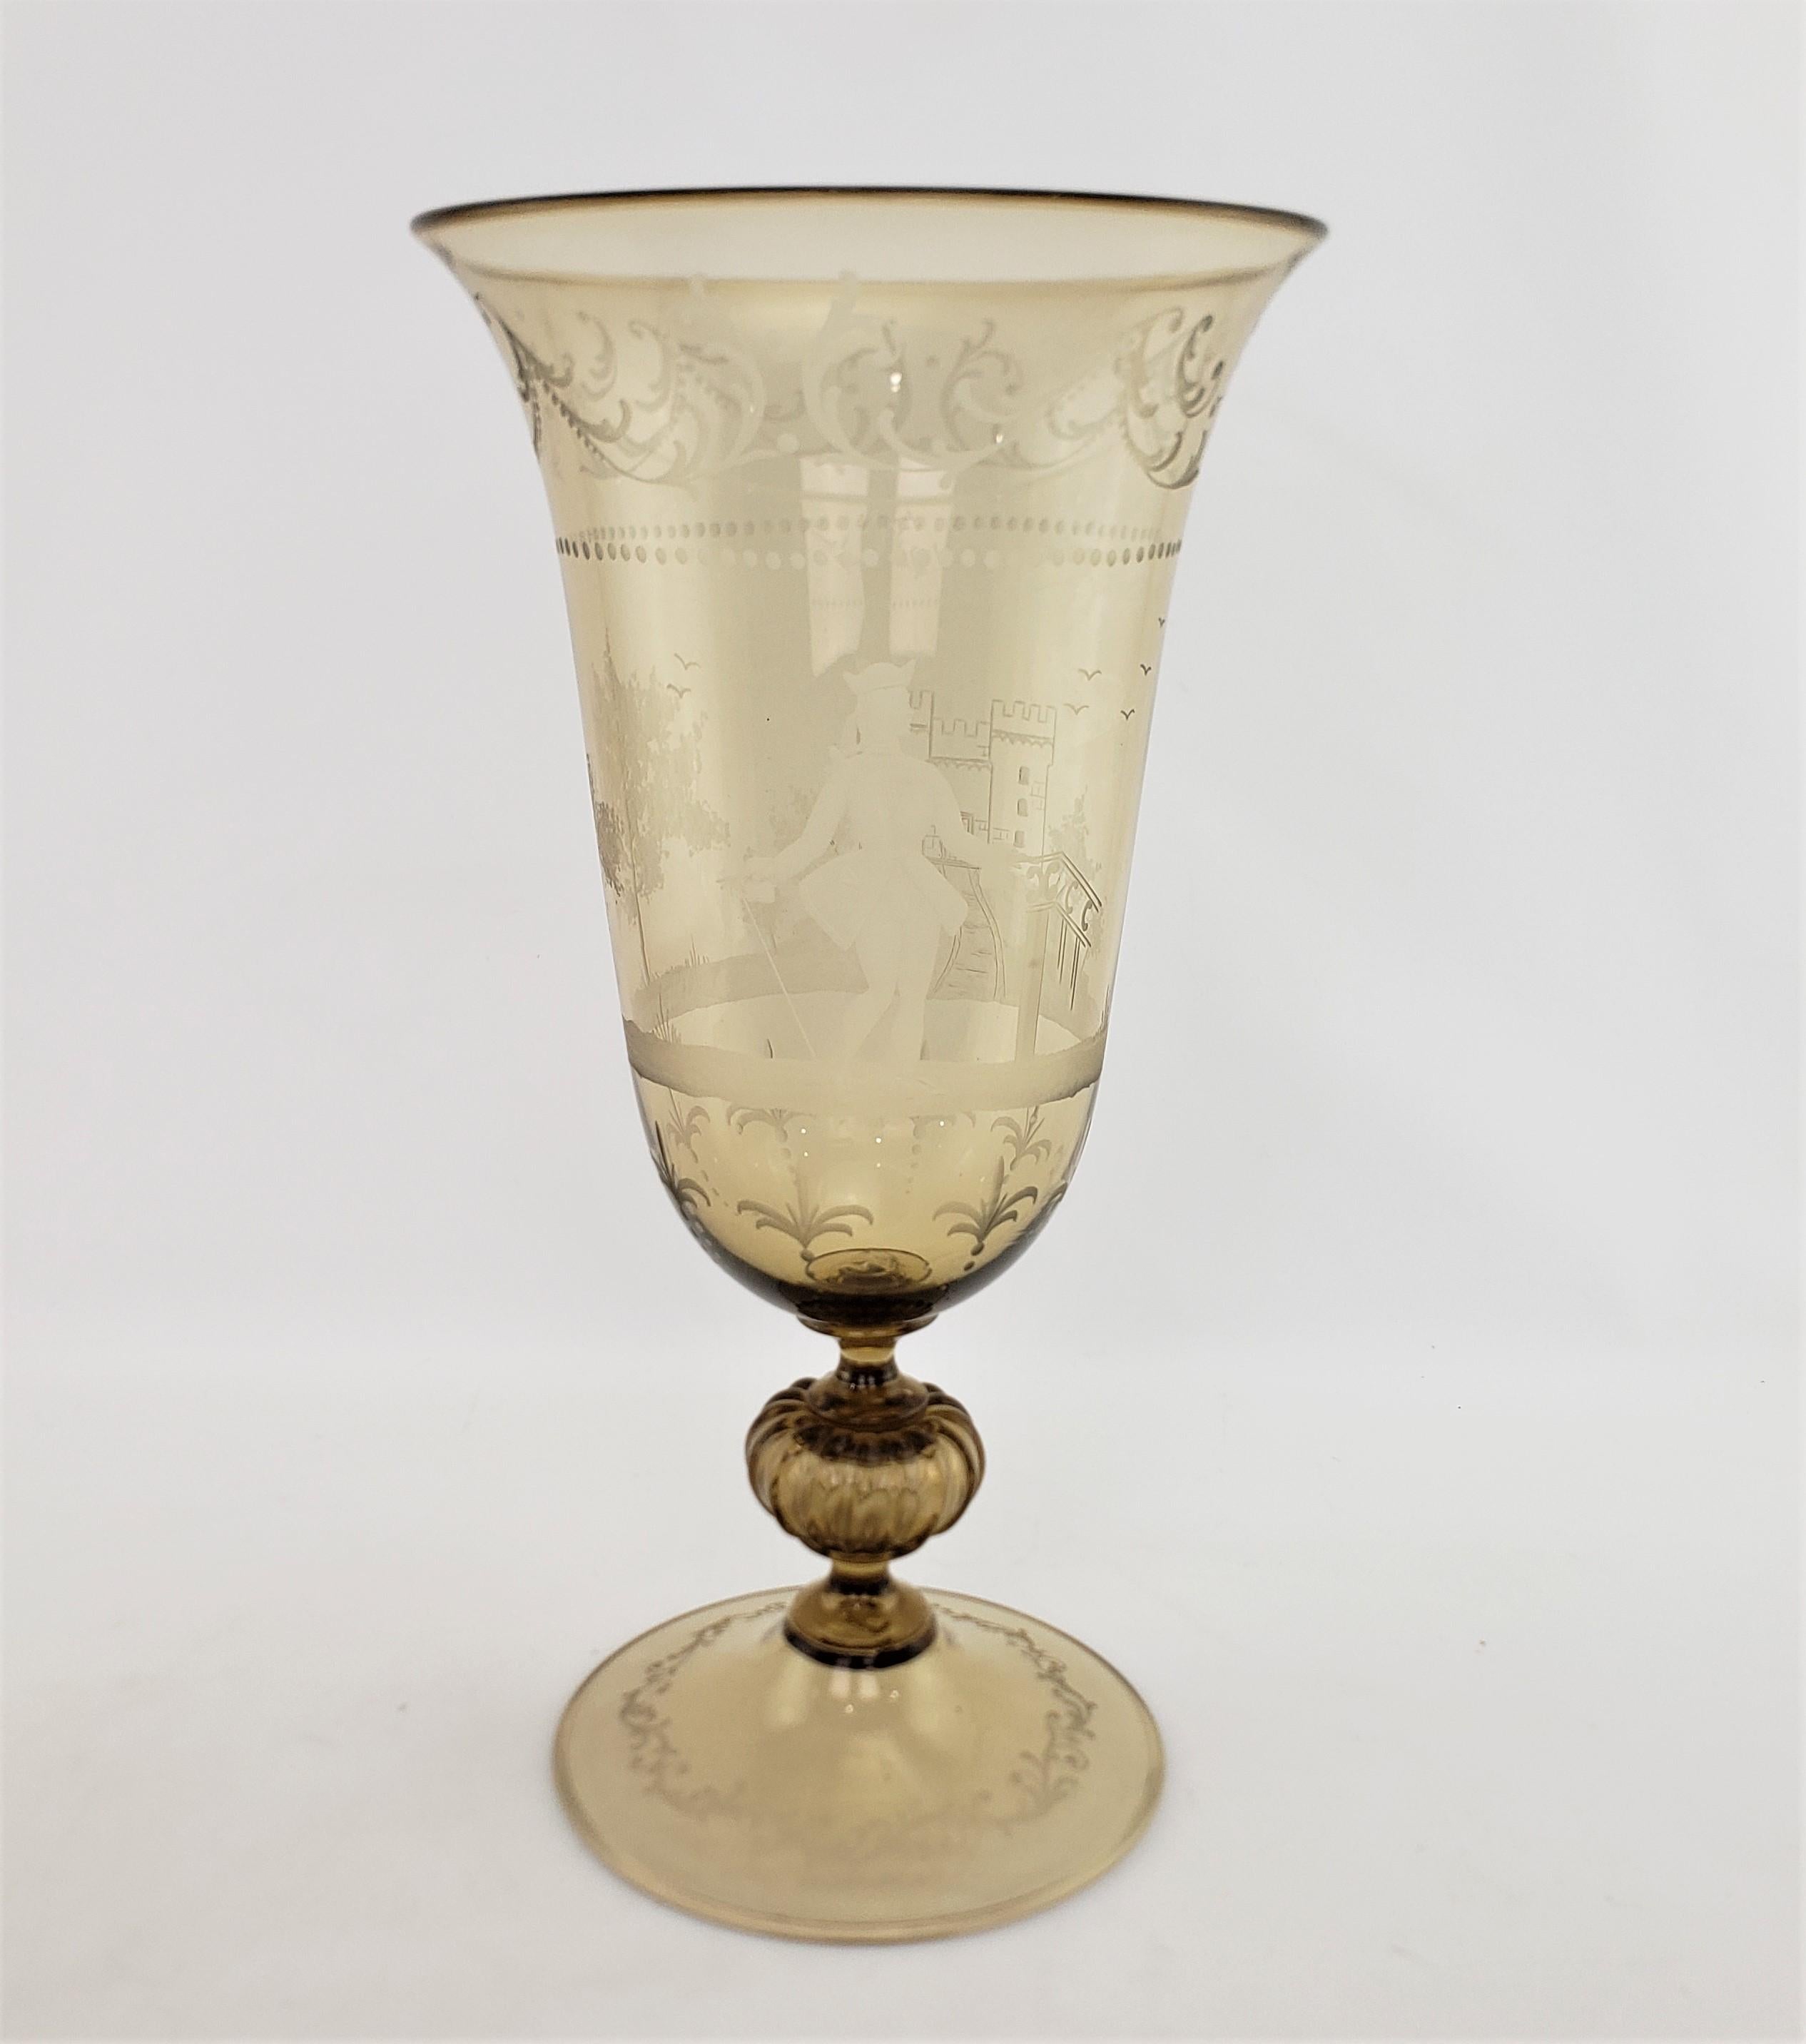 Diese sehr große und massive Vase aus bernsteinfarbenem Kunstglas ist unsigniert, stammt aber vermutlich aus Italien und wurde um 1950 im Renaissance-Revival-Stil hergestellt. Diese Vase ist handgefertigt und aus hellem Braunglas mit geschliffenem